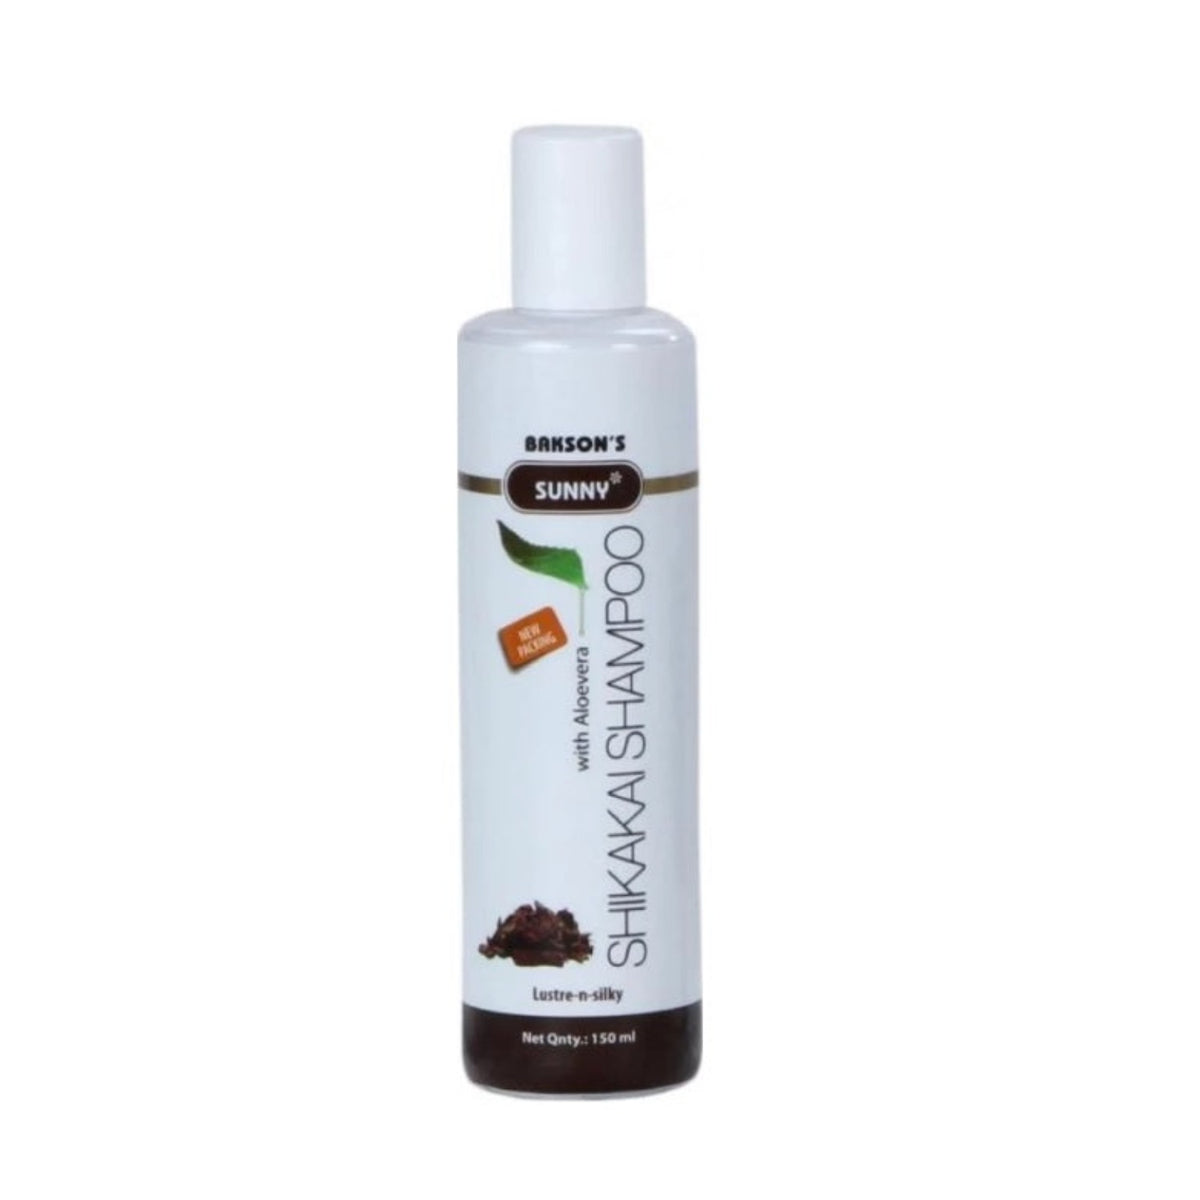 Bakson's Sunny Herbals Shikakai With Aloevera Lustre-n-Silky Hair Shampoo